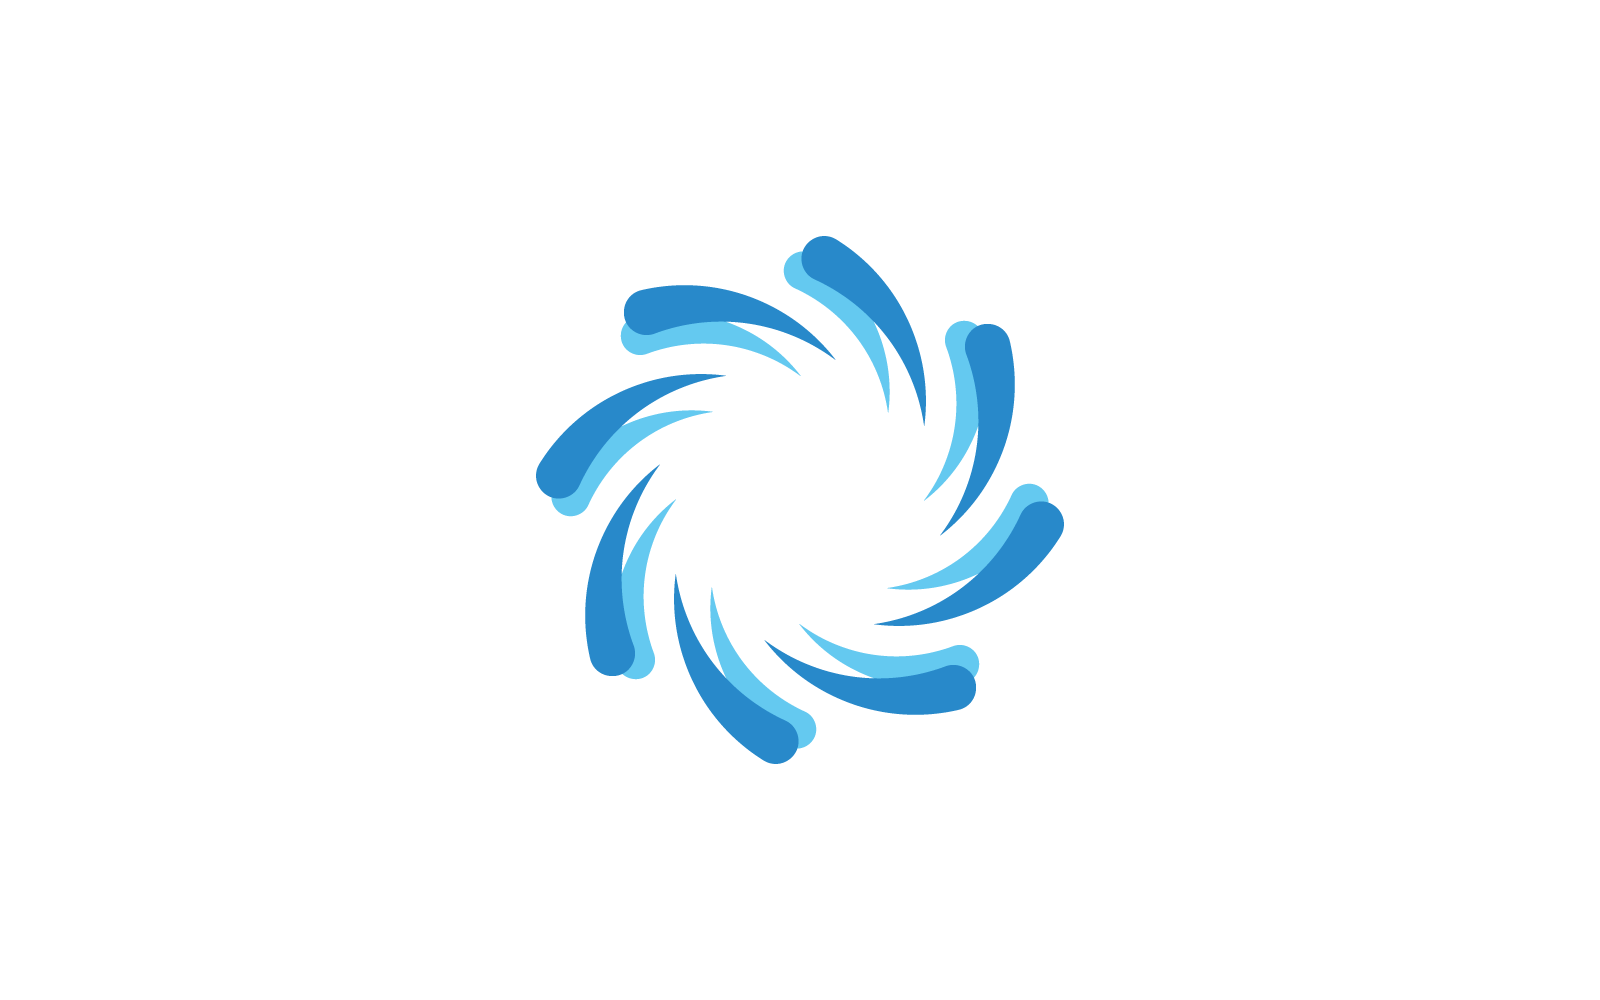 Business logo, vortex, wave and spiral design icon